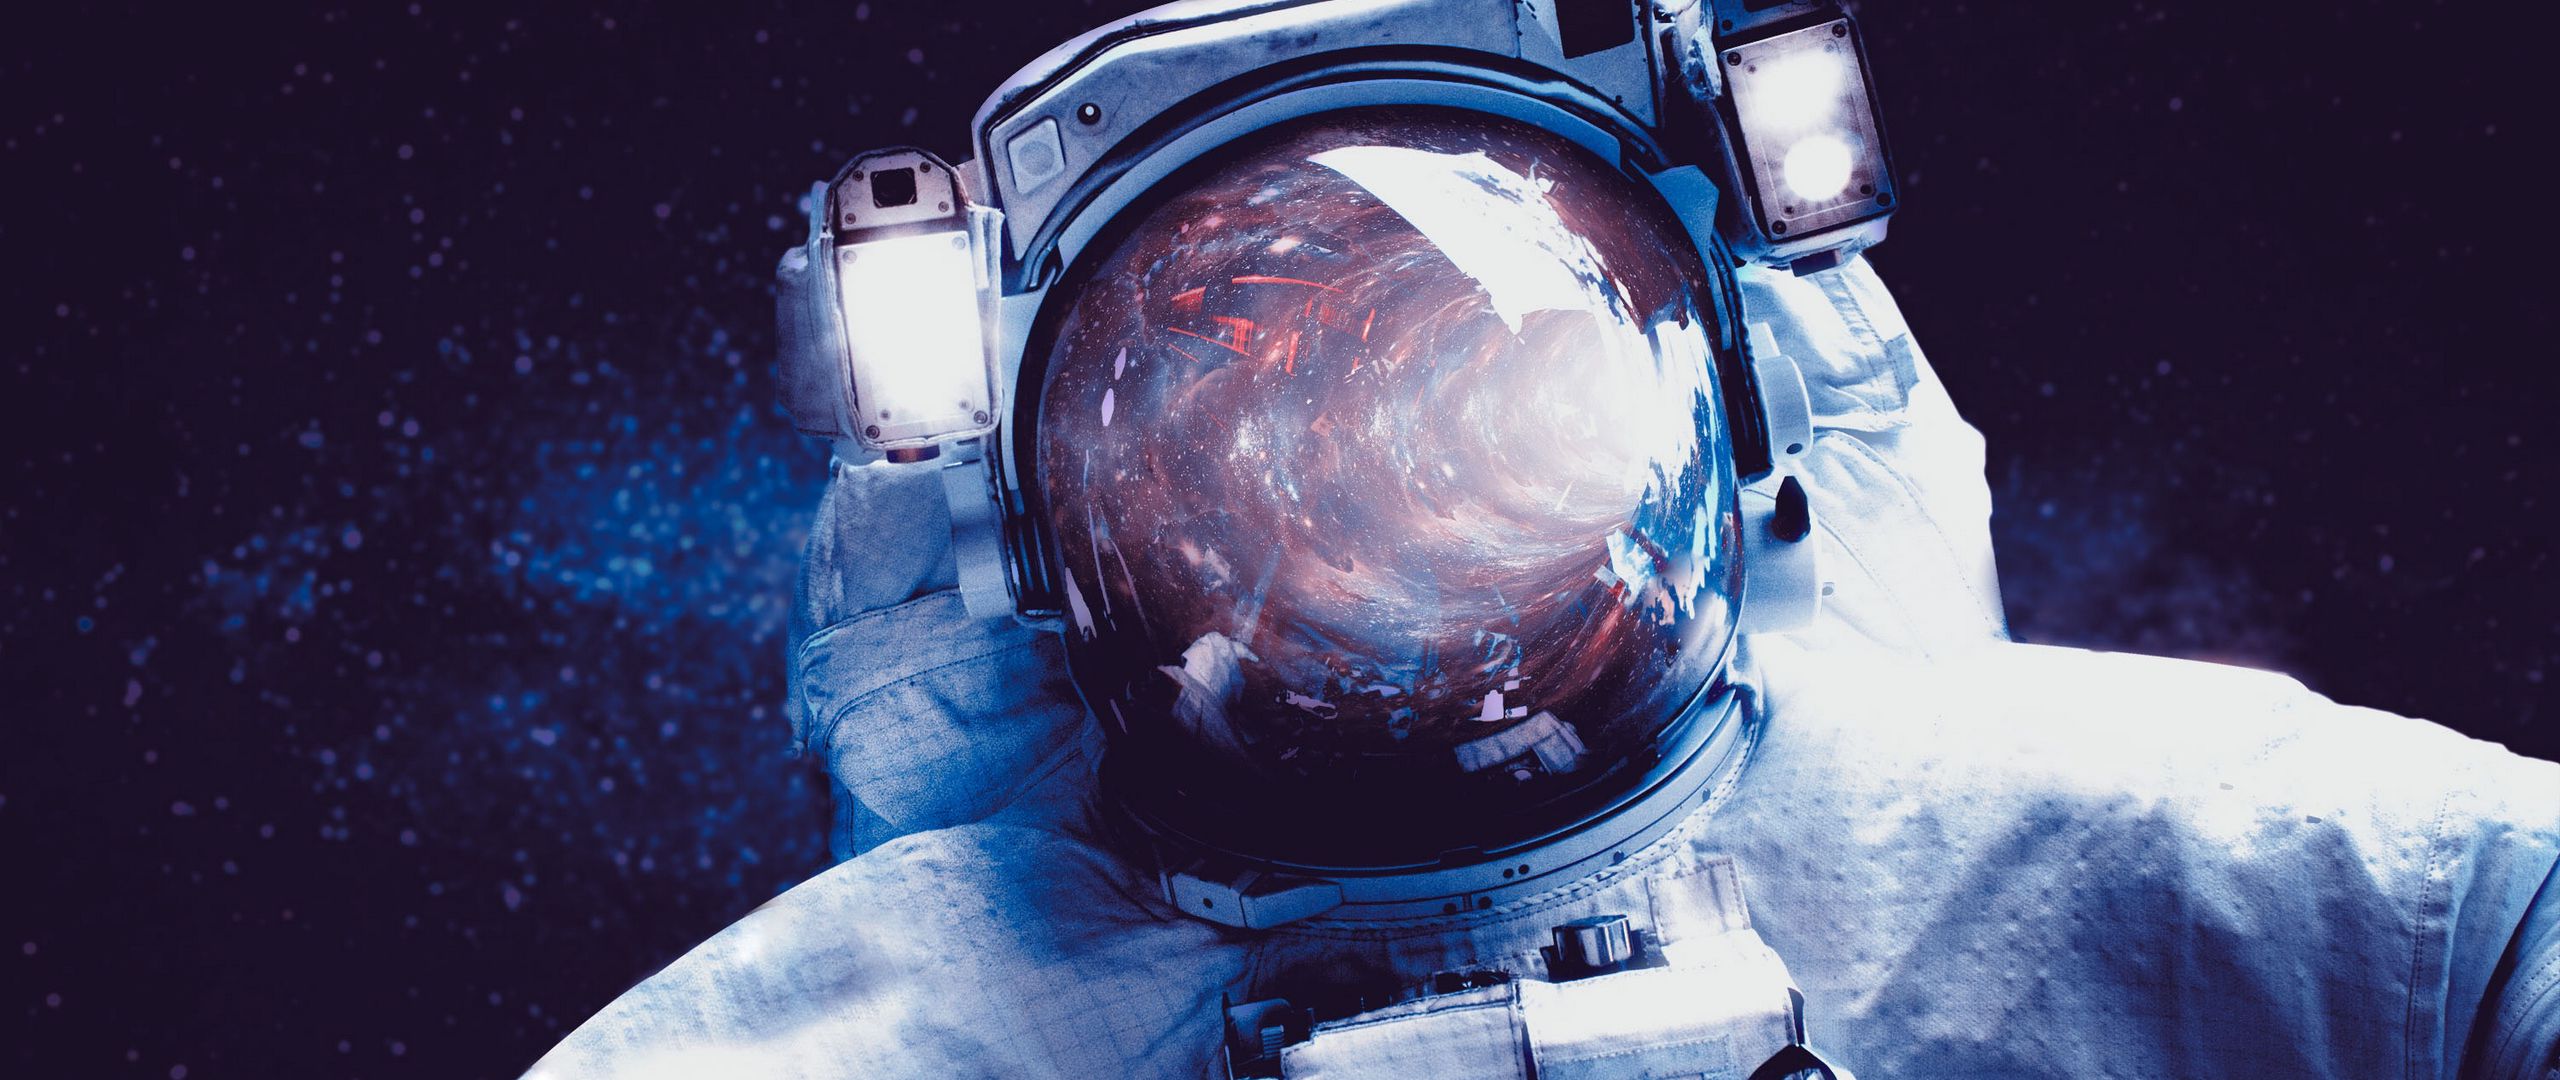 Отражение в шлеме Космонавта